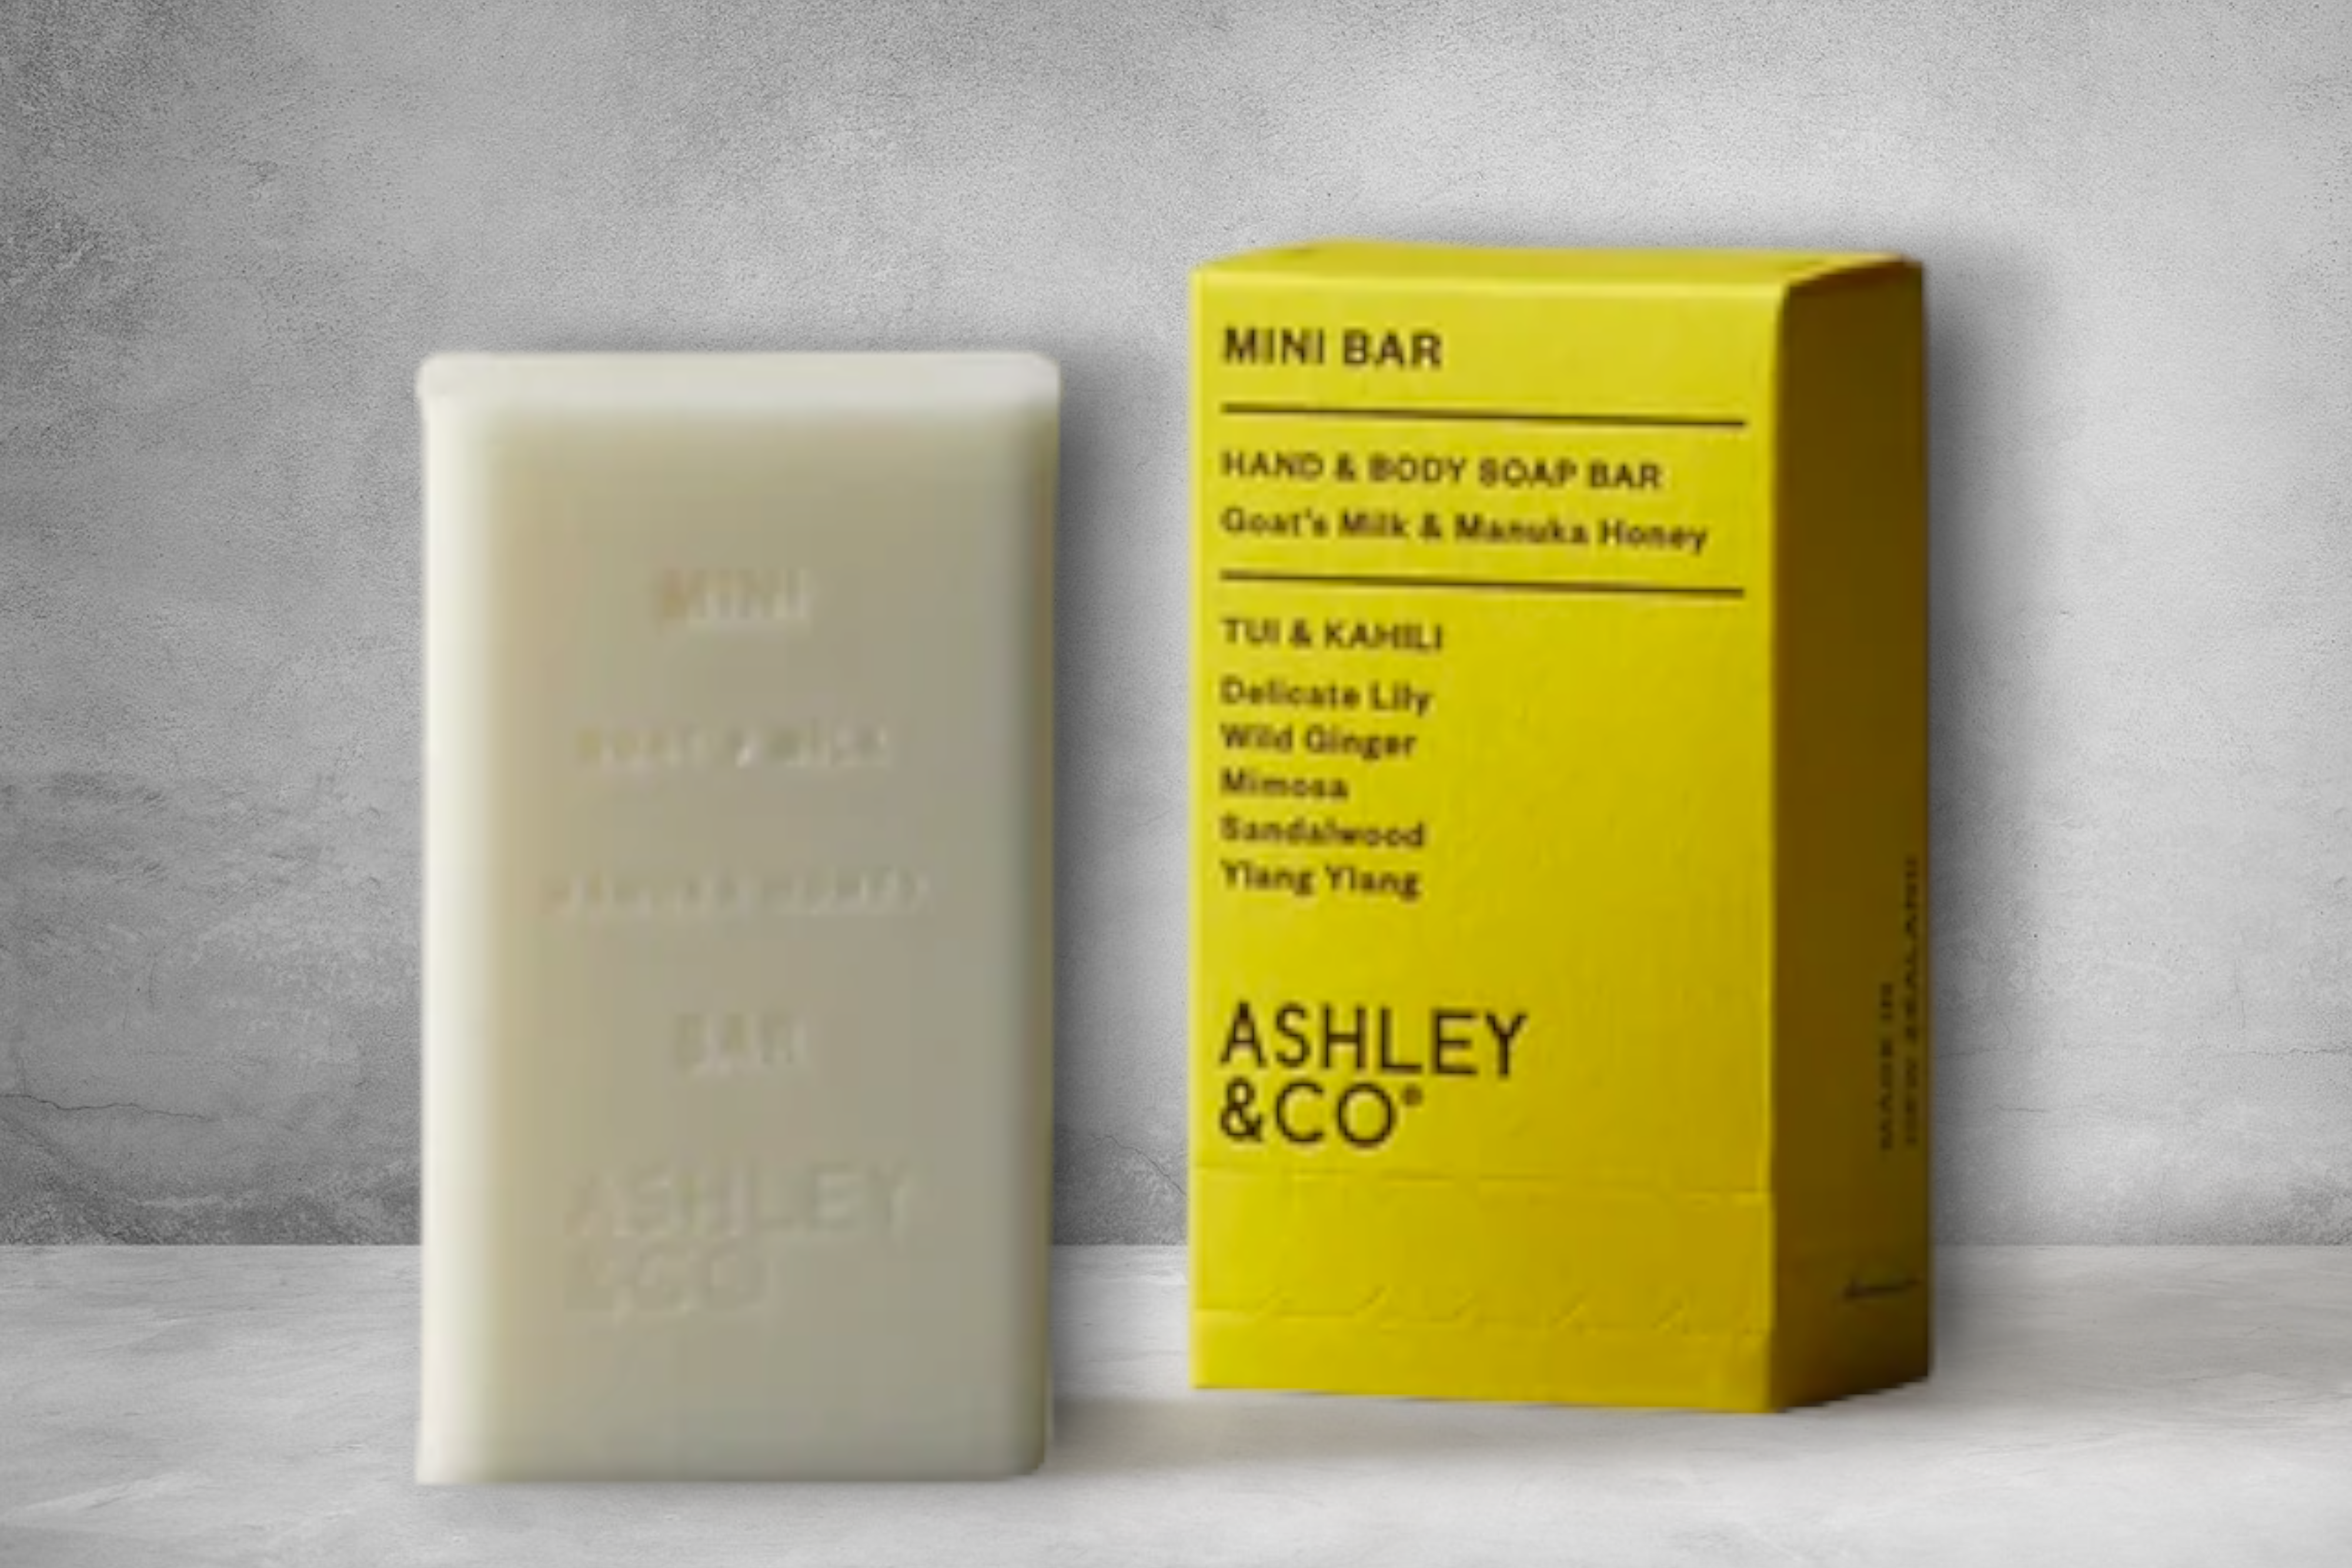 Ashley & Co tui & kahili mini bar soap